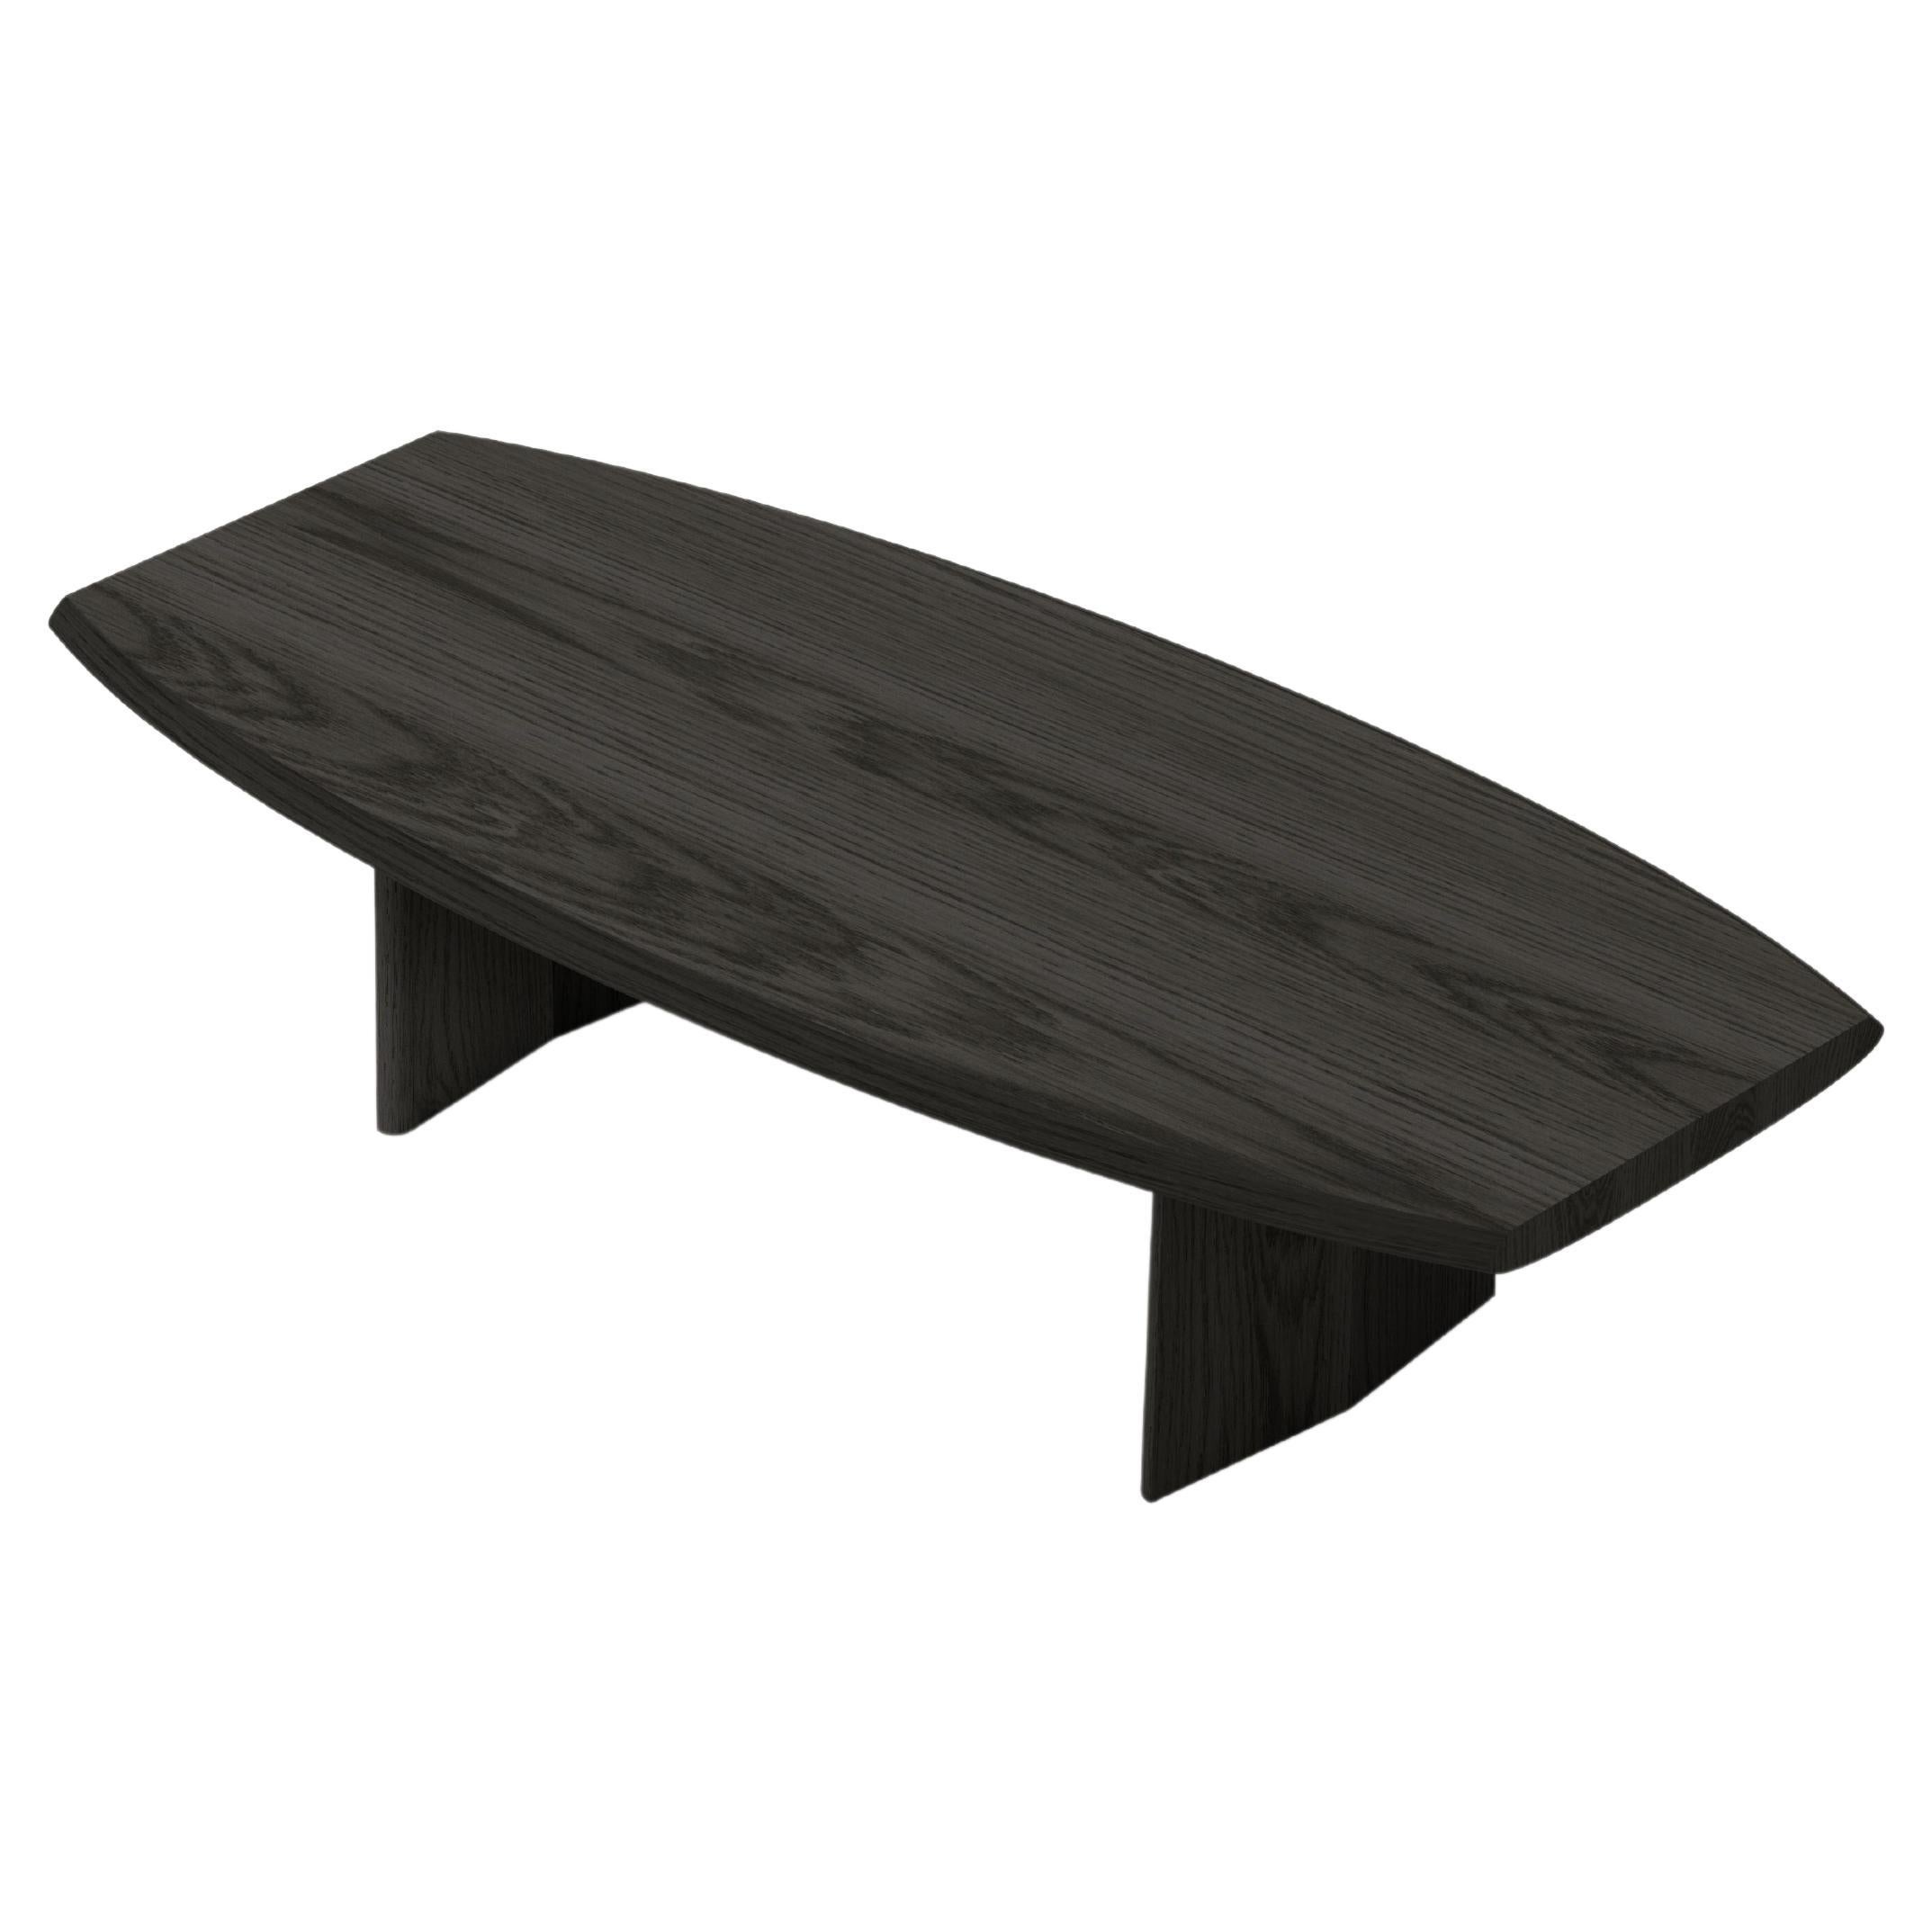 Table basse Peana, banc en bois massif teinté noir par Joel Escalona